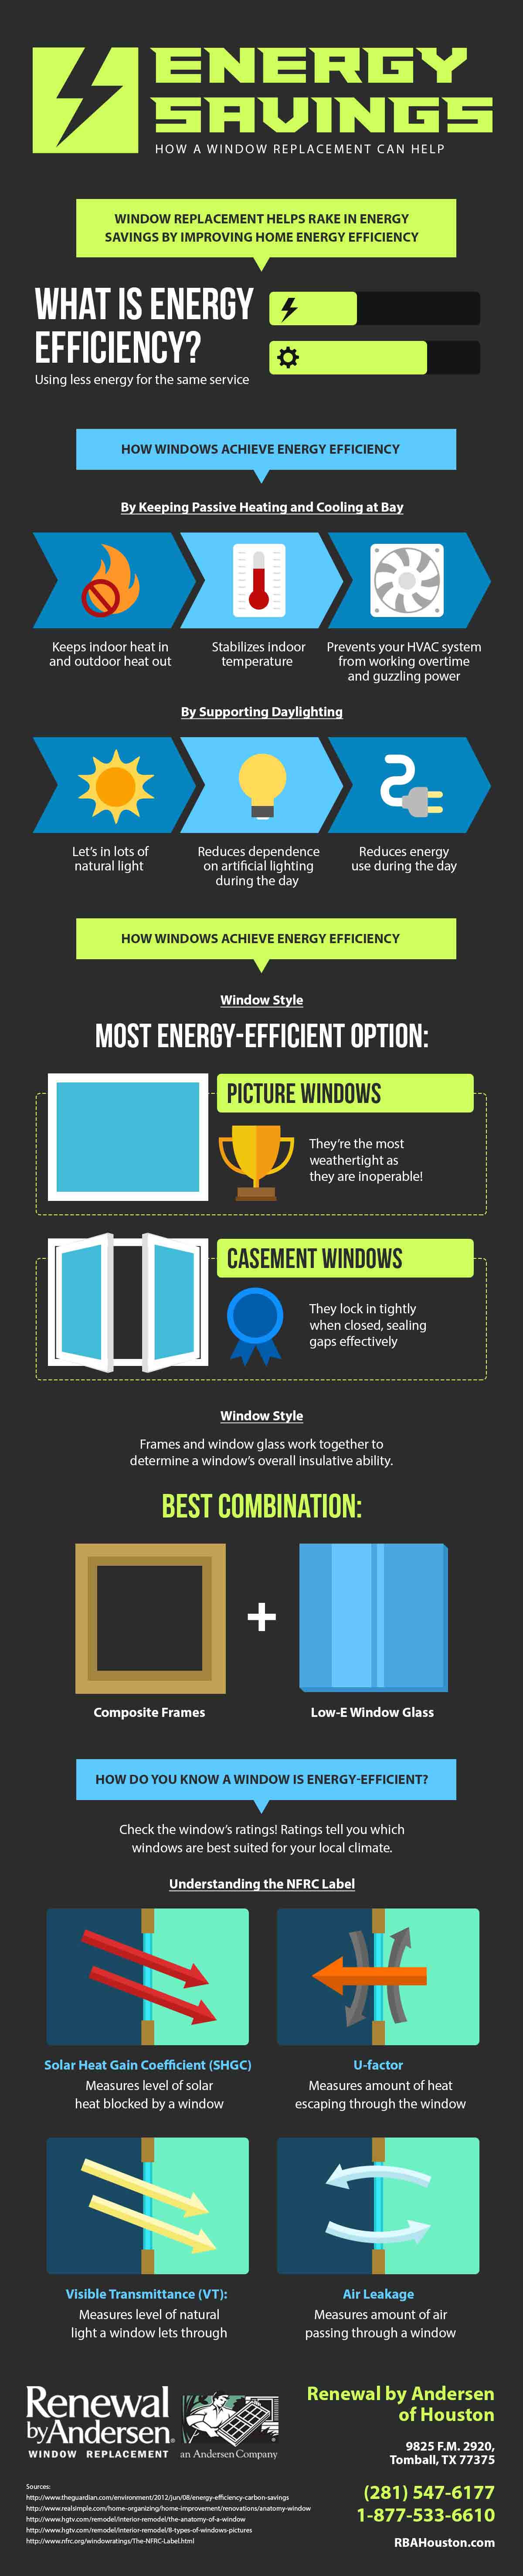 Energy Savings window